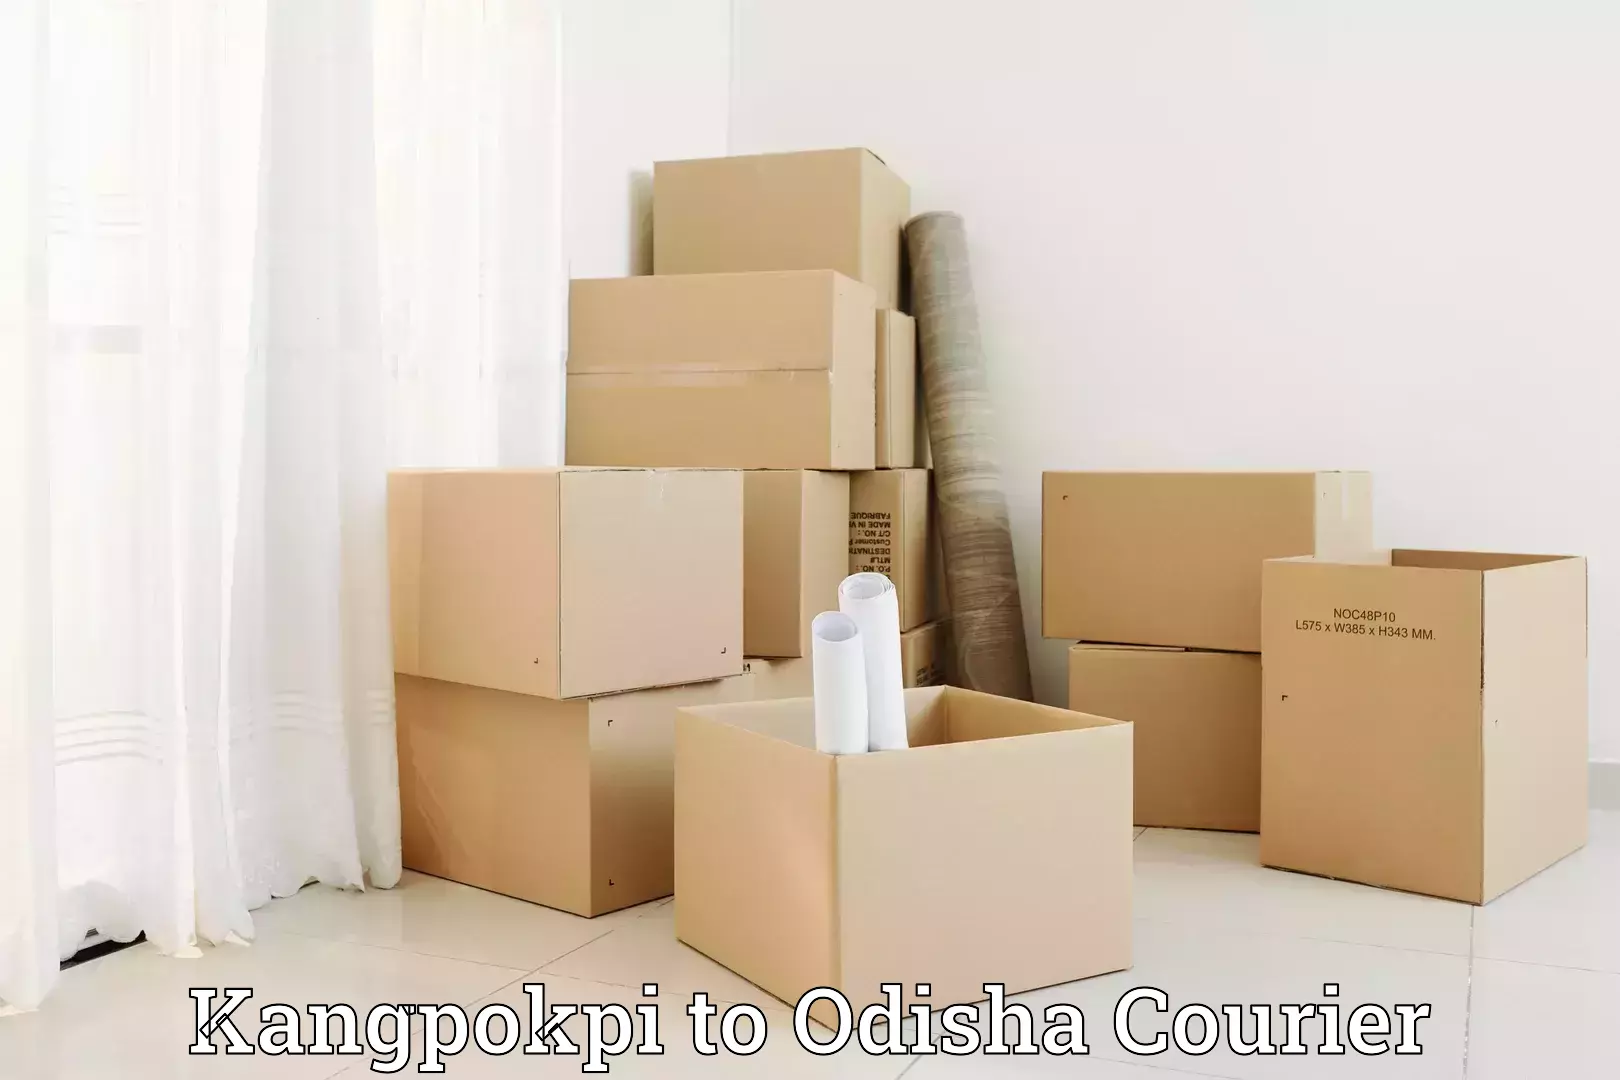 Luggage shipping estimate Kangpokpi to Cuttack